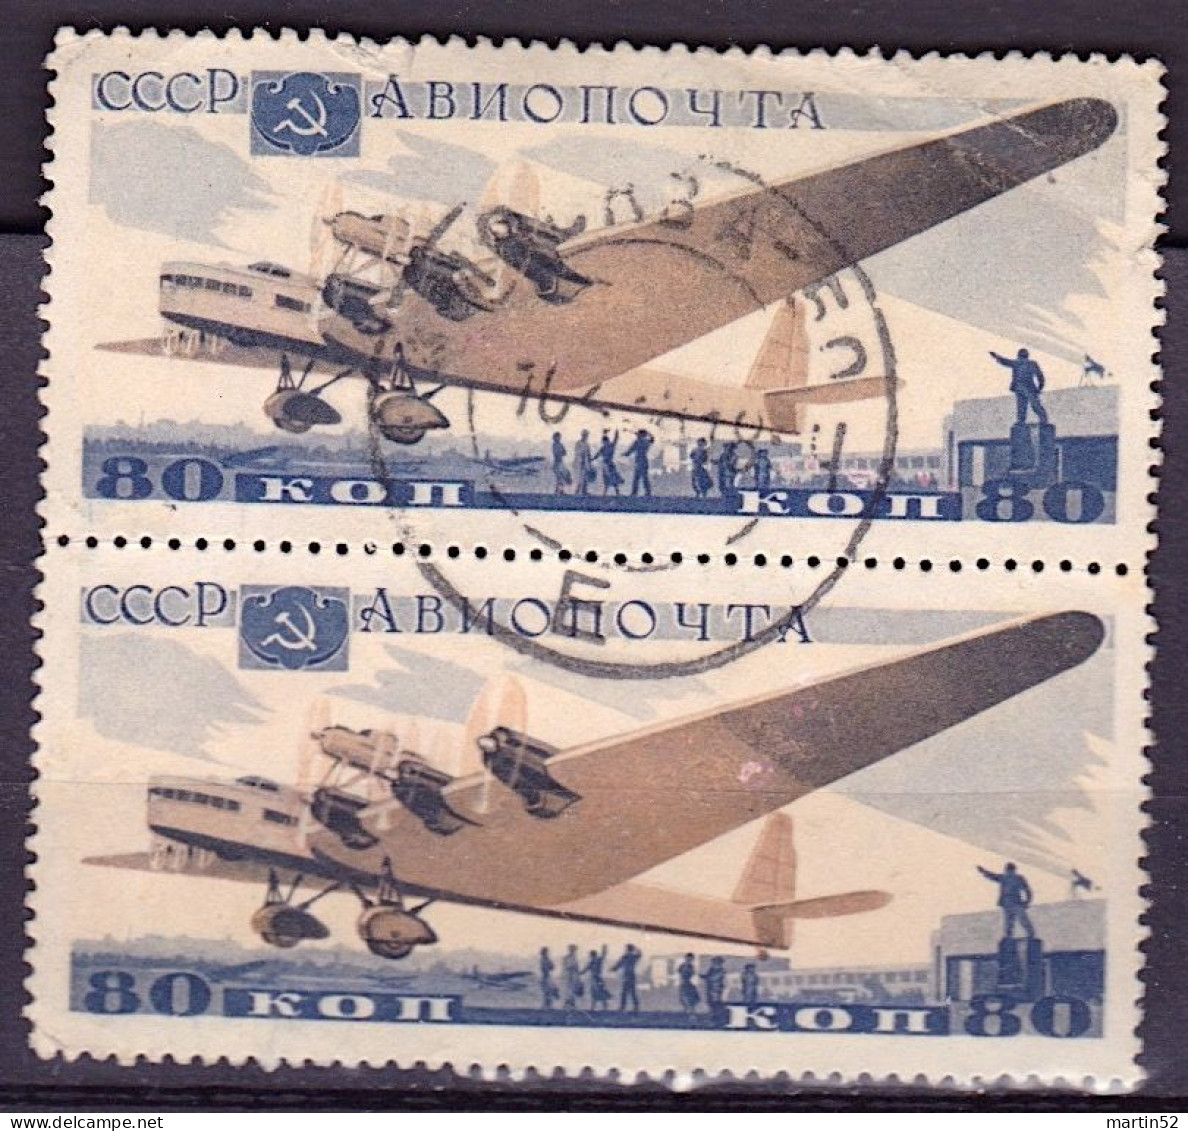 Sowiet-Union CCCP Russie URSS 1937: Antonov ANT-20 (80 Kop) Michel-N° 576 Im Paar Gestempelt Obliterée Used - Usados